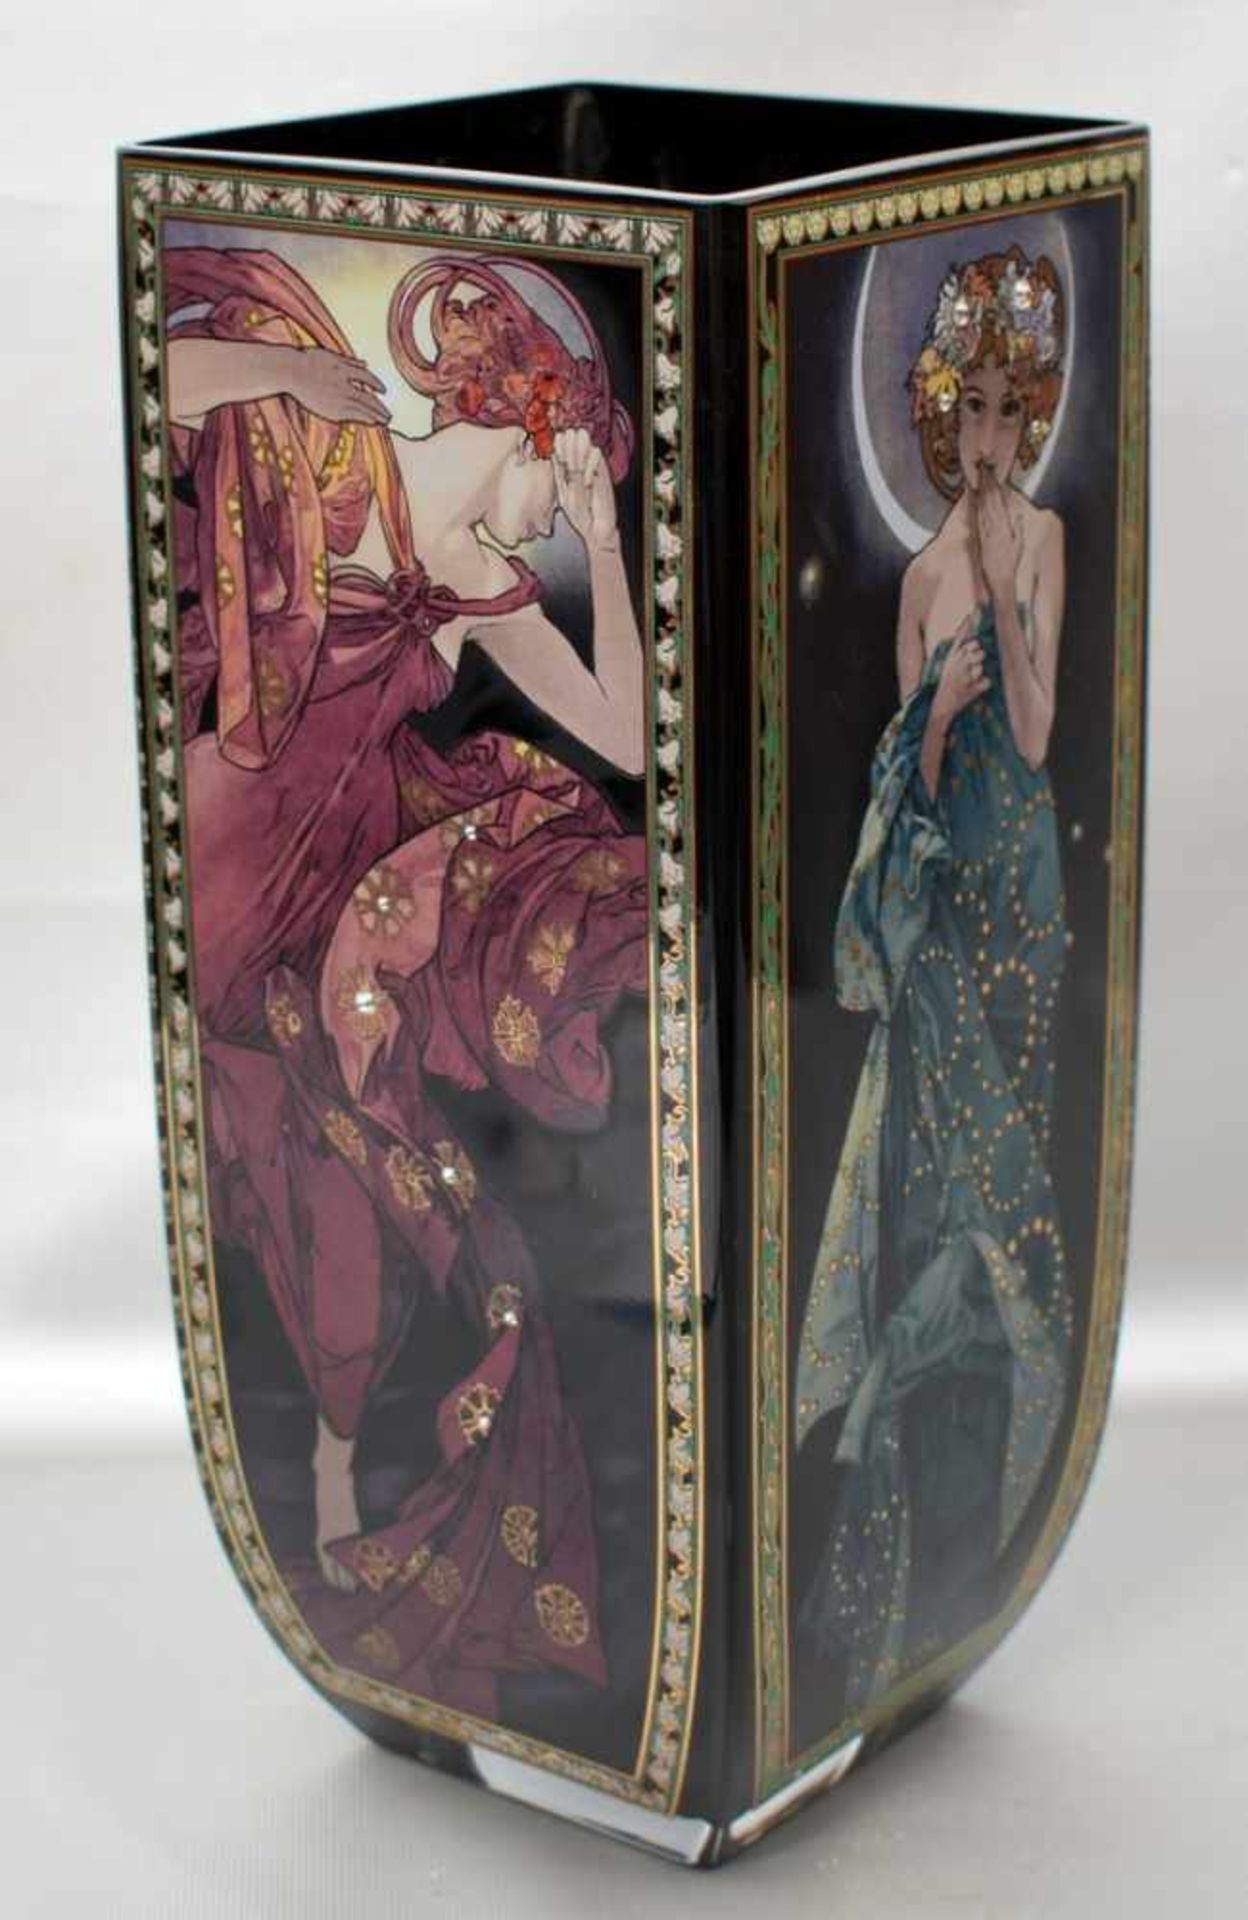 Vase im Stil des Jugendstil, viereckig, mit Jugendstil-Motiven und farbl. Glassteinchen verziert,